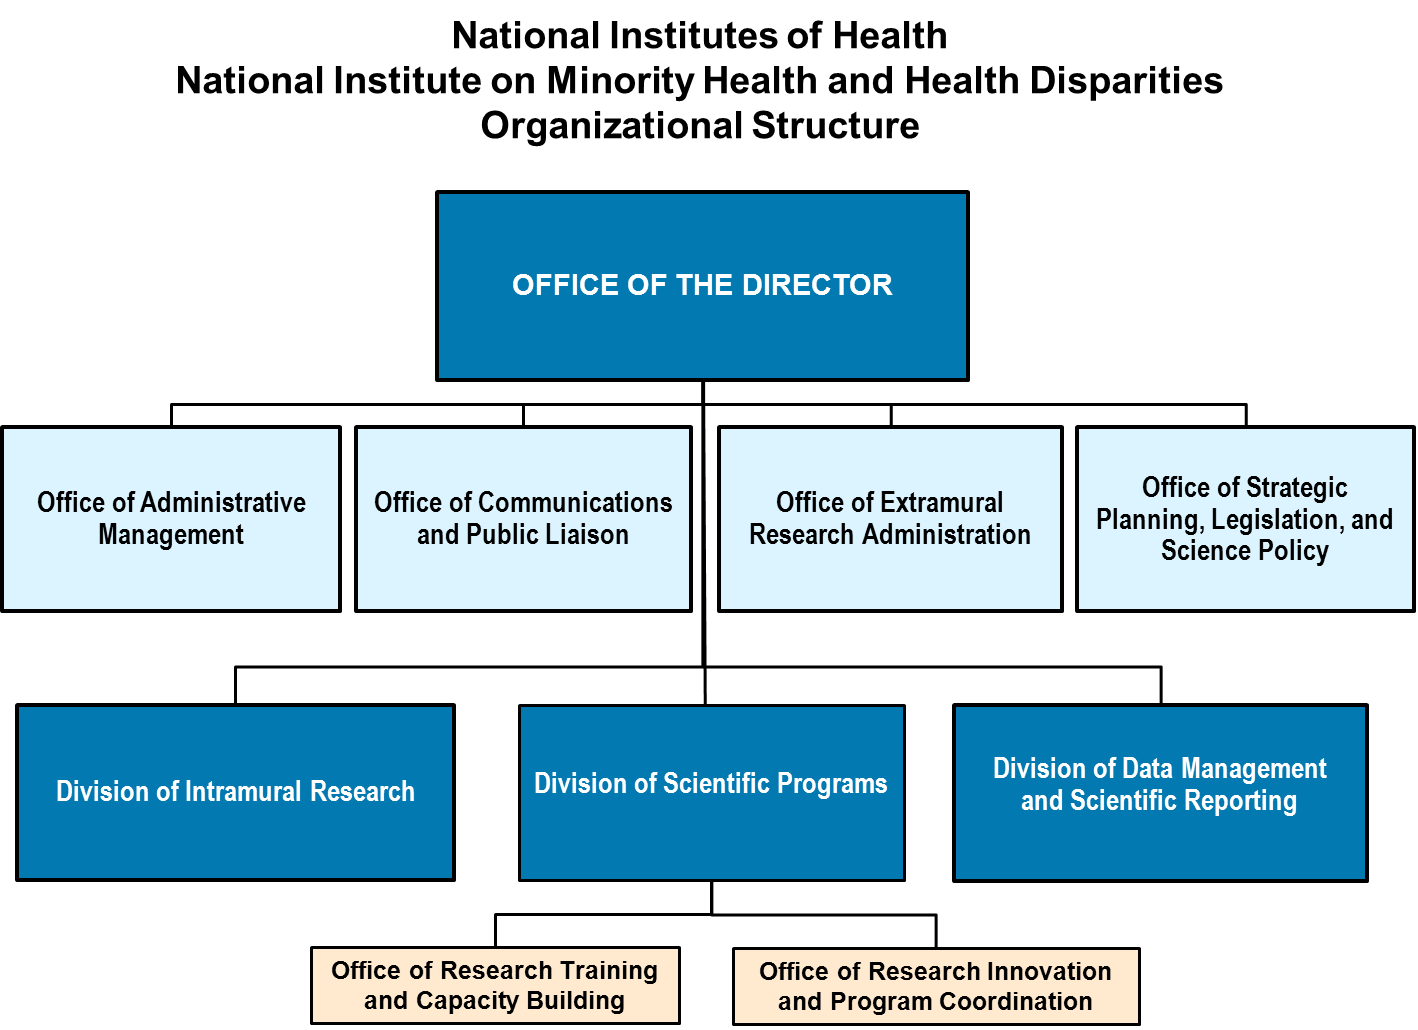 [DIAGRAM] Microsoft Office Hierarchy Diagram - MYDIAGRAM.ONLINE